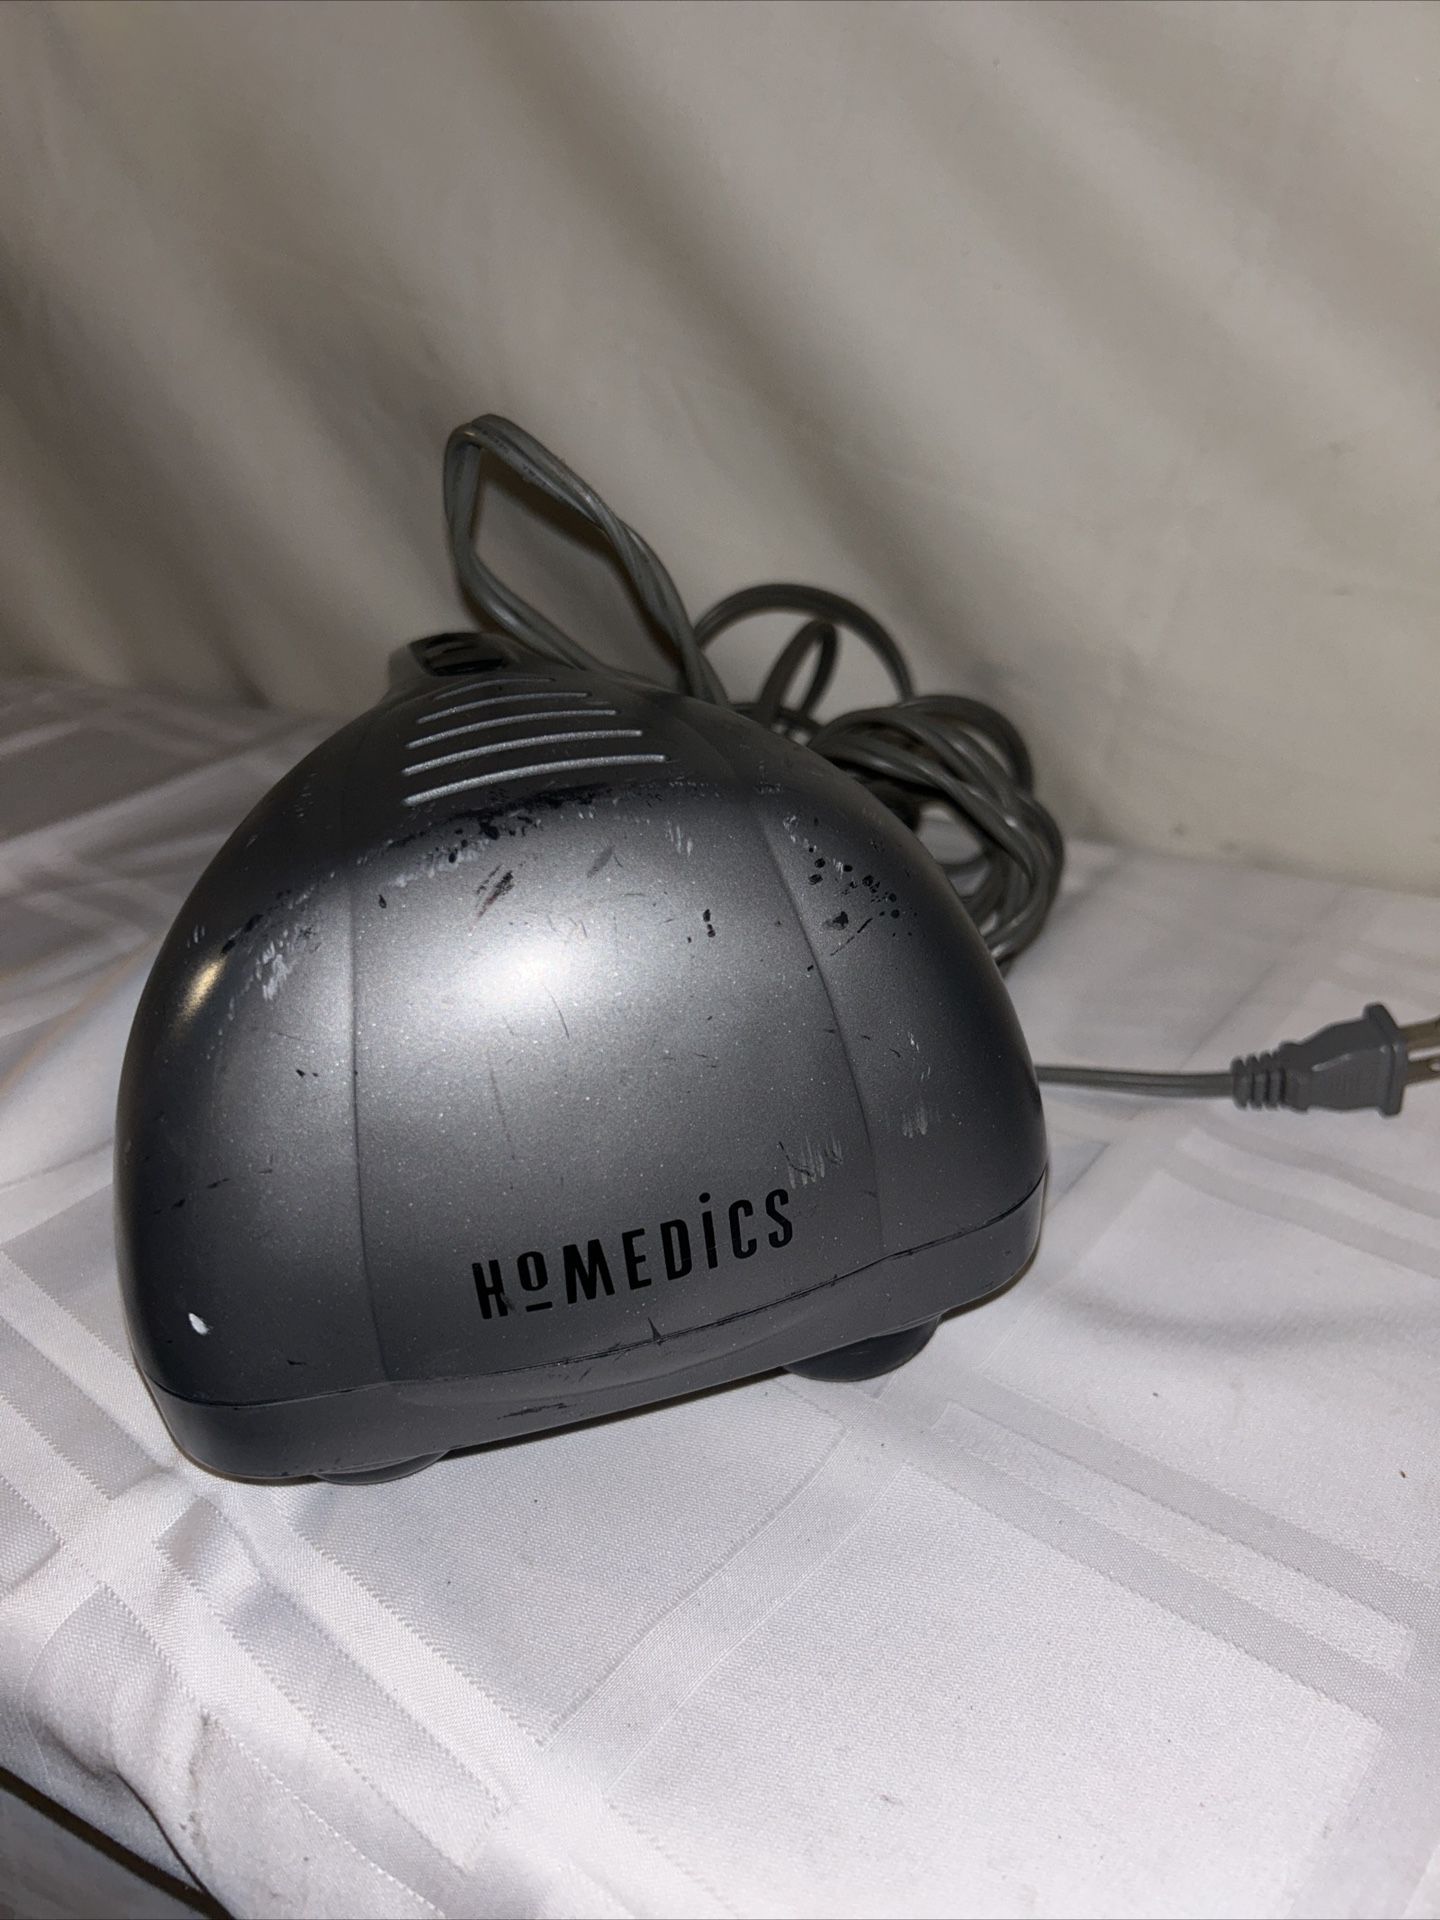 Homedics Model PA-1 Dual Head Percussion Hand Held Massager Vibrator Adjustable